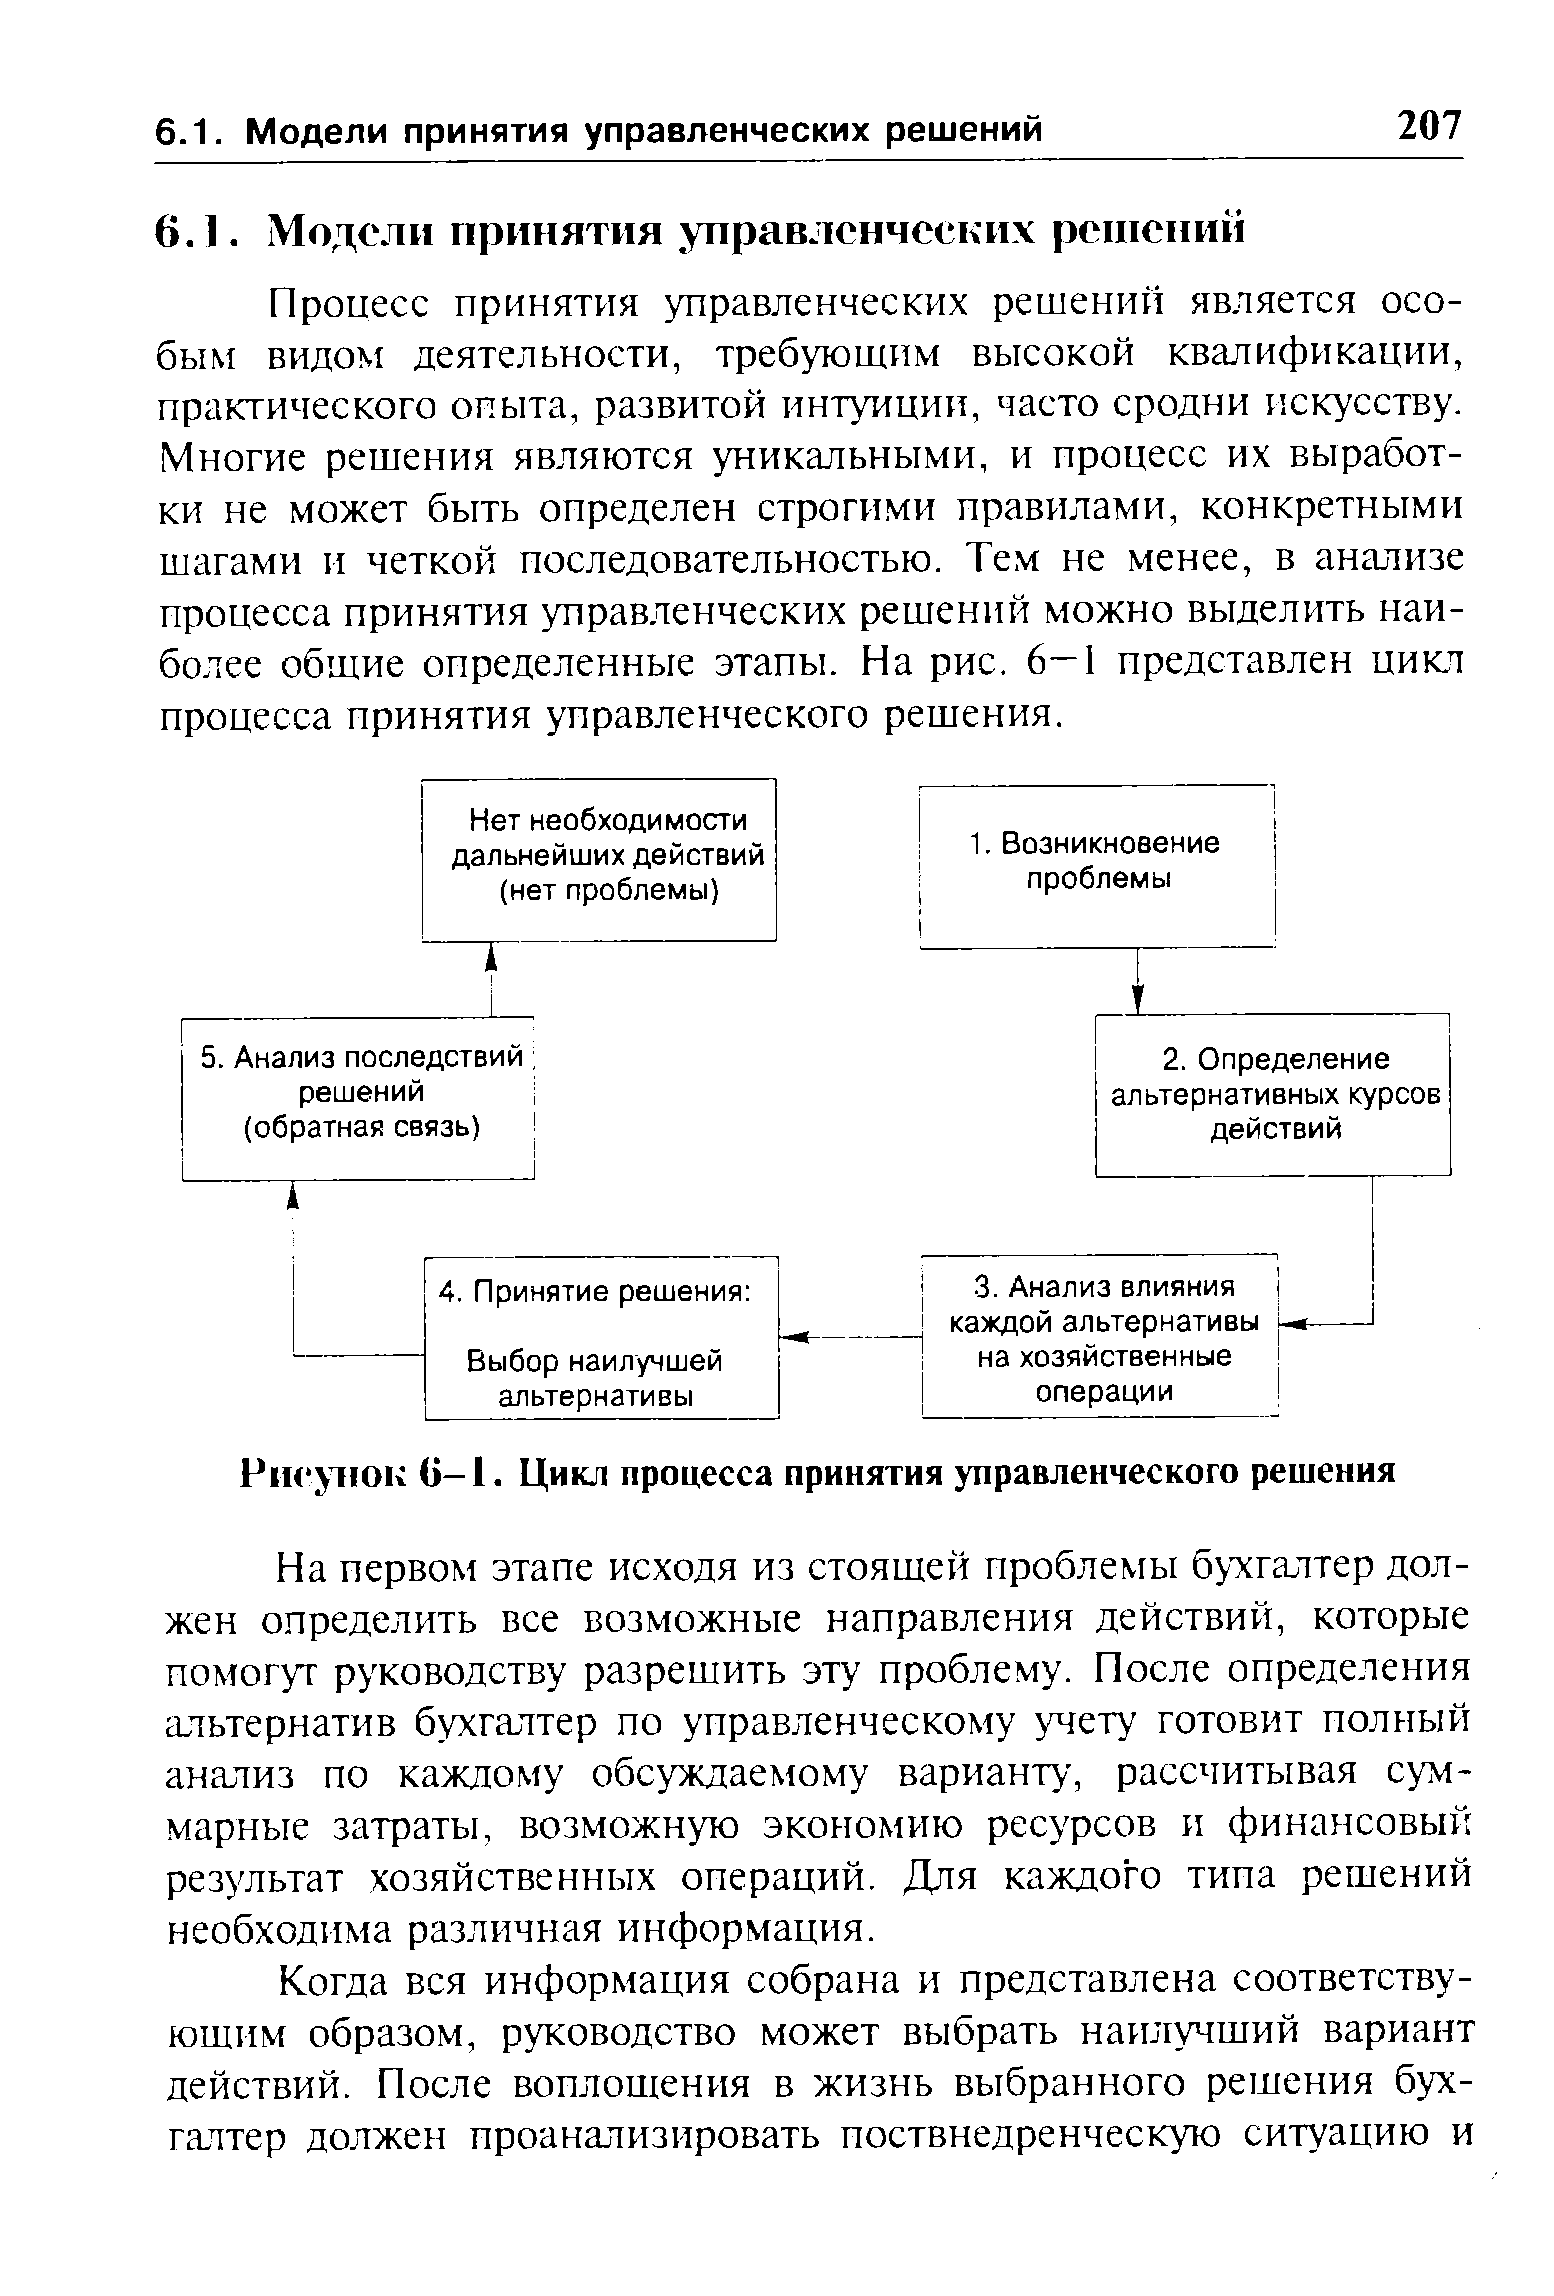 Рисунок G—1. Цикл процесса принятия управленческого решения
